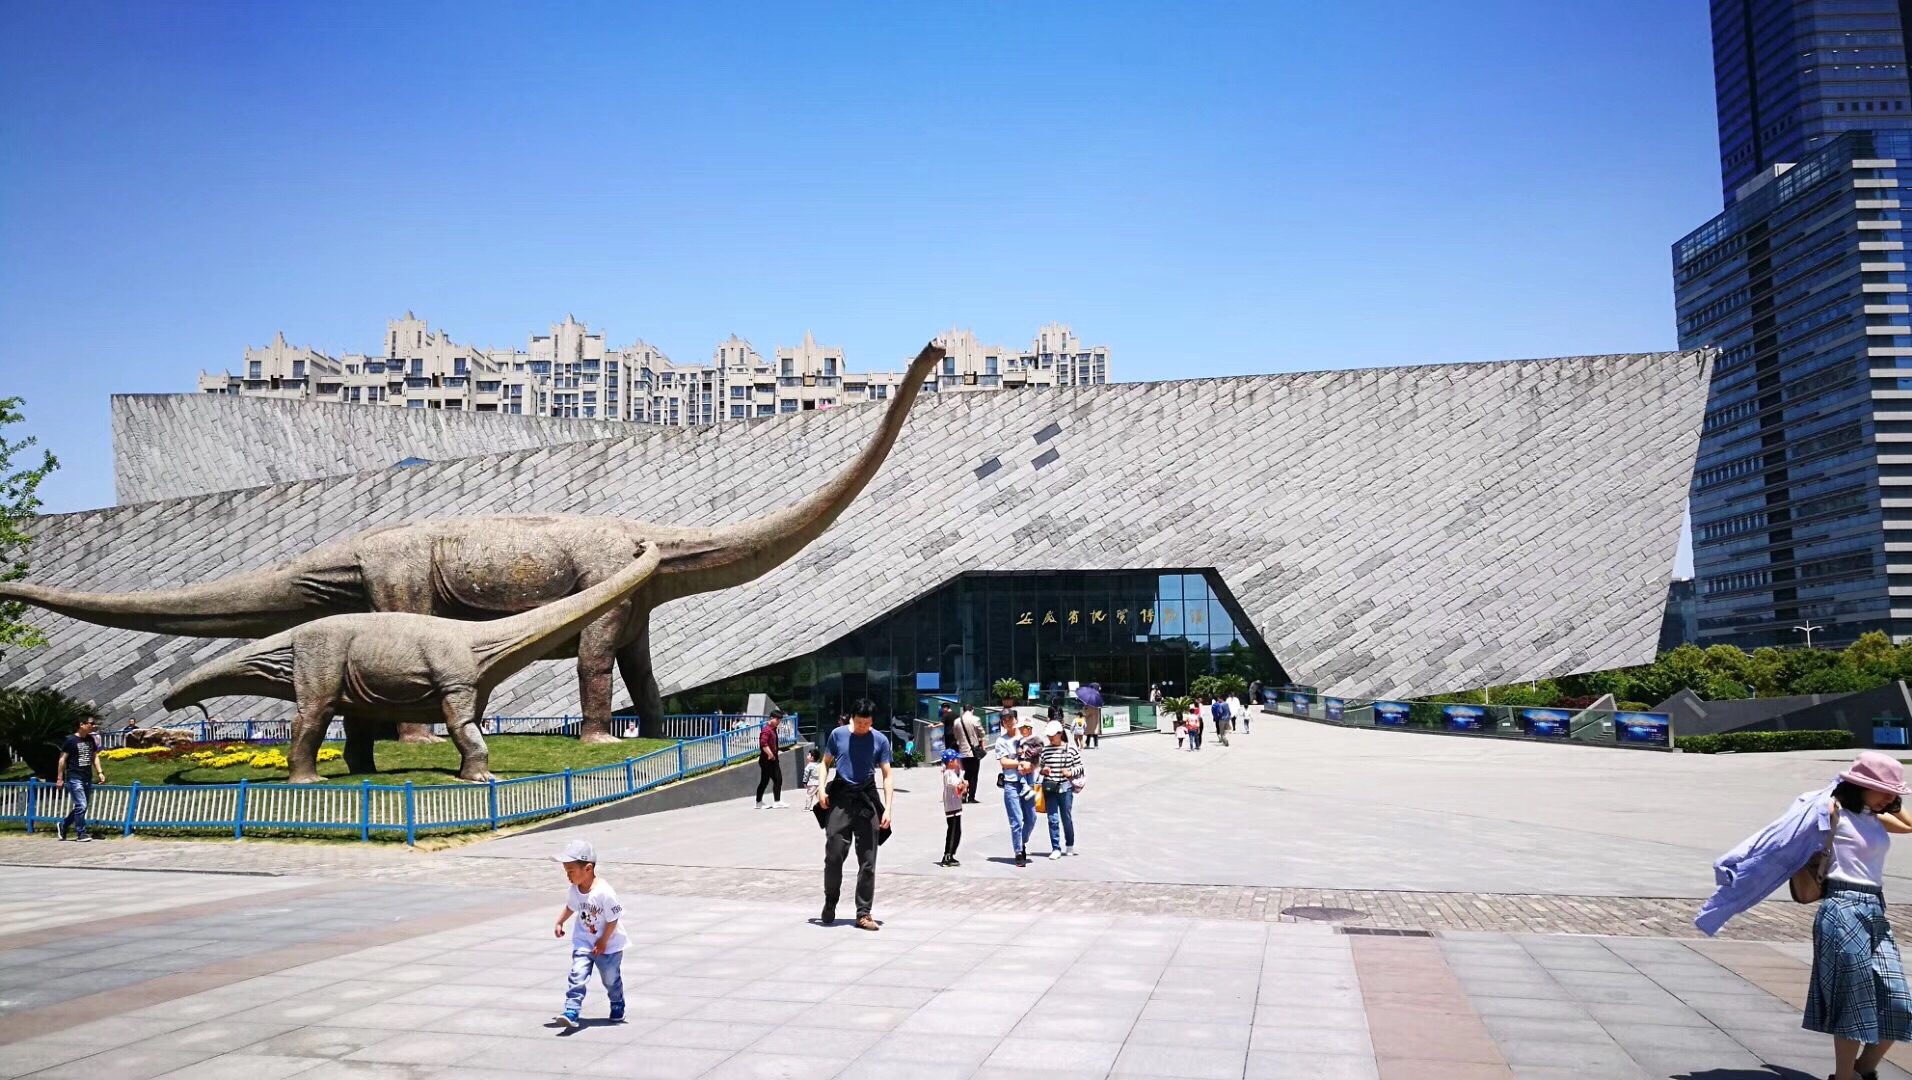 【携程攻略】合肥安徽省地质博物馆景点,安徽地质博物馆不输上海自然